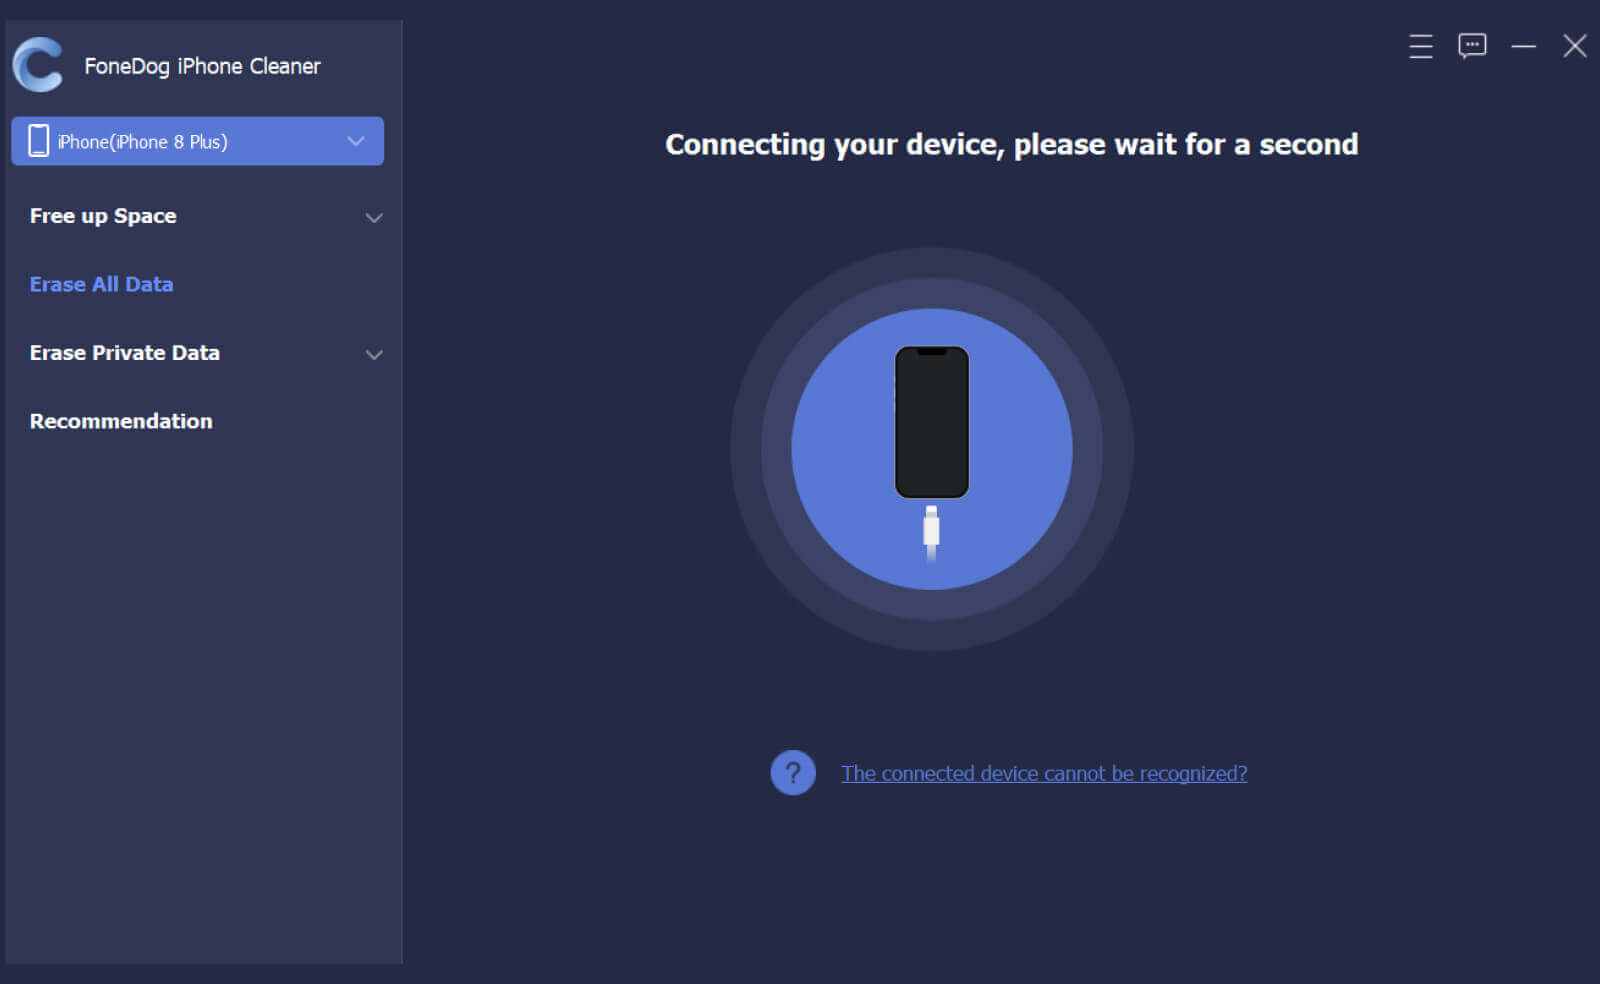 Uso de FoneDog iPhone Cleaner para conectar el dispositivo cuando iCloud no puede eliminar la copia de seguridad